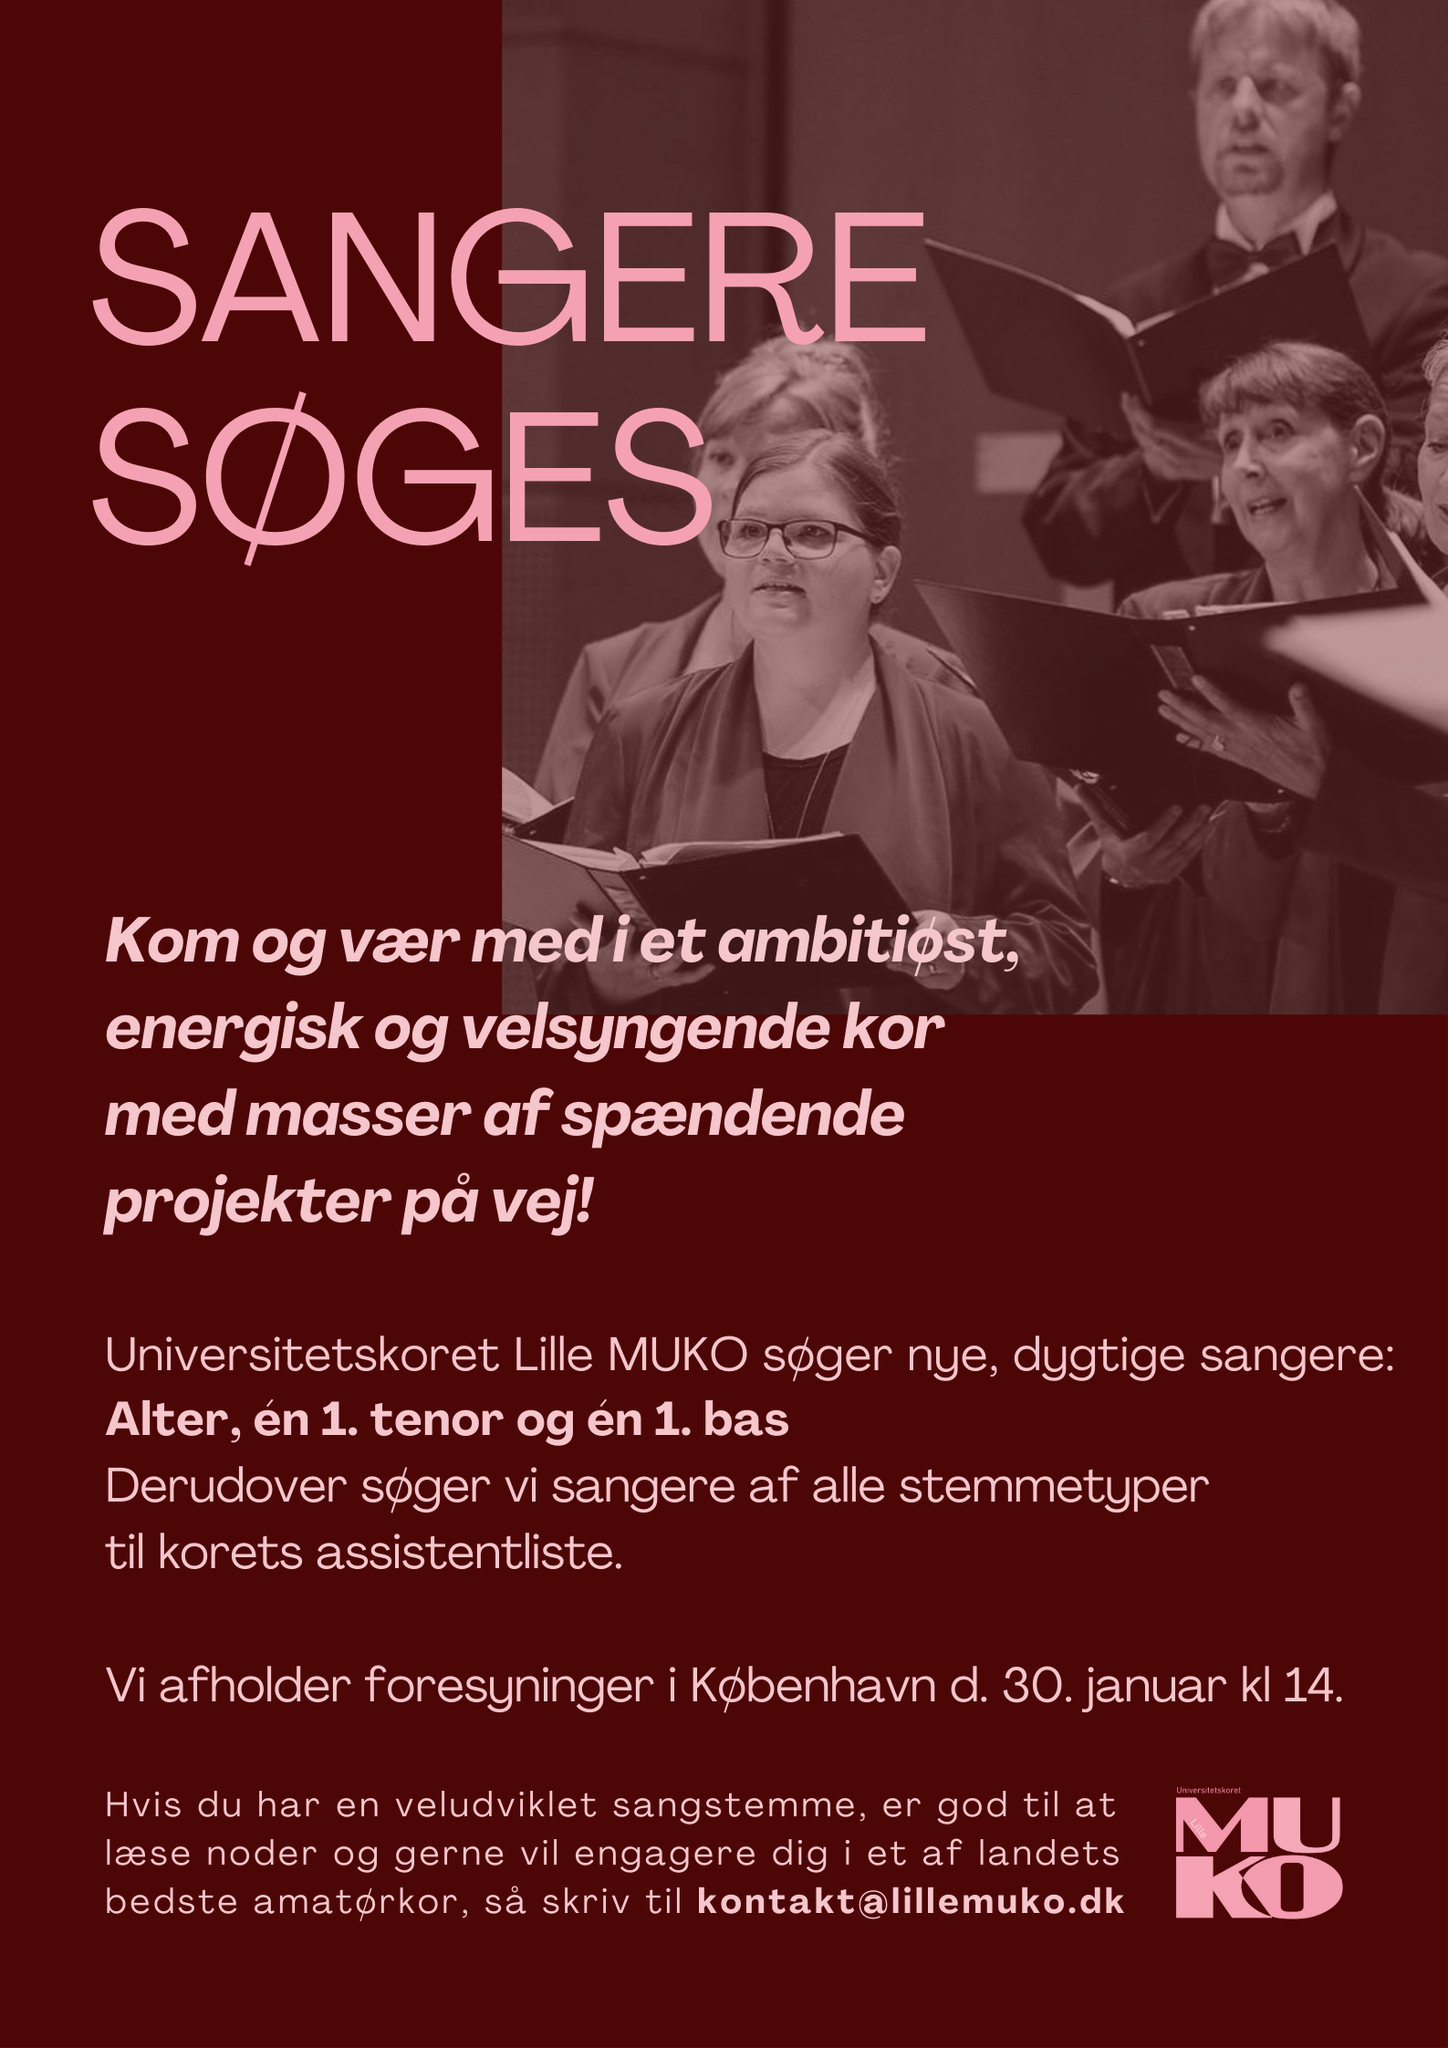 Sangere søges - Universitetskoret Lille MUKO - Klassisk kor i København